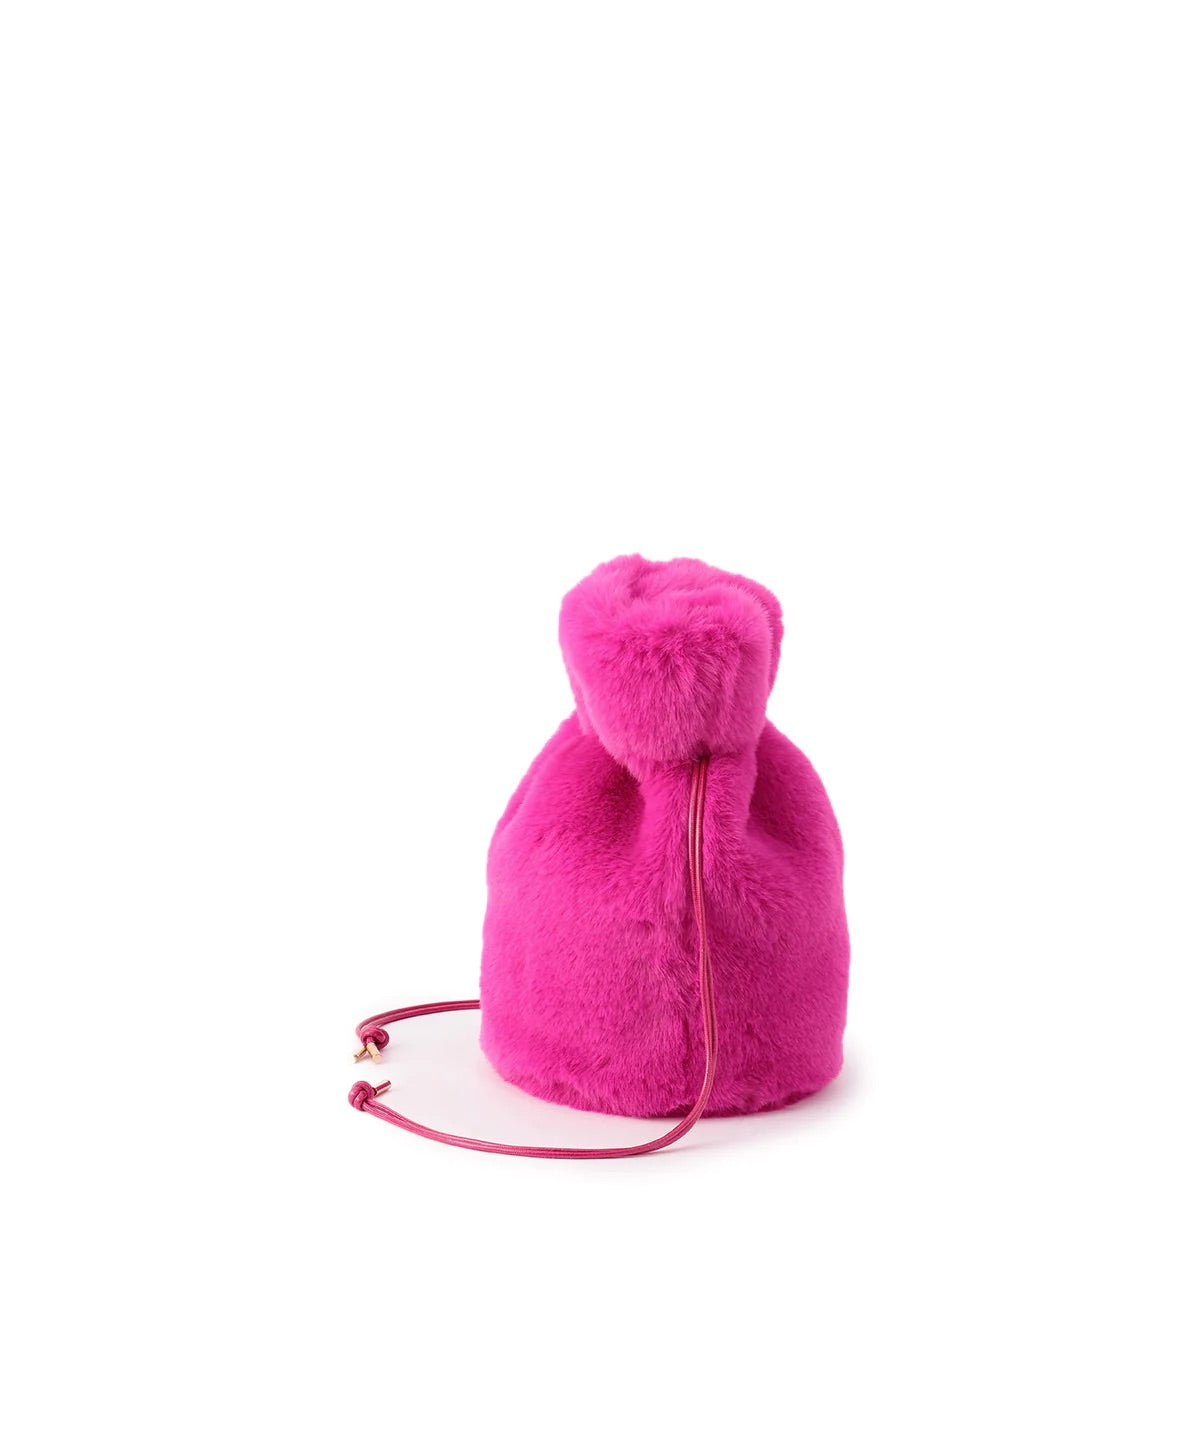 【期間限定ポーチS付き】Eco Fur Drawstring Bag (Small) PINK